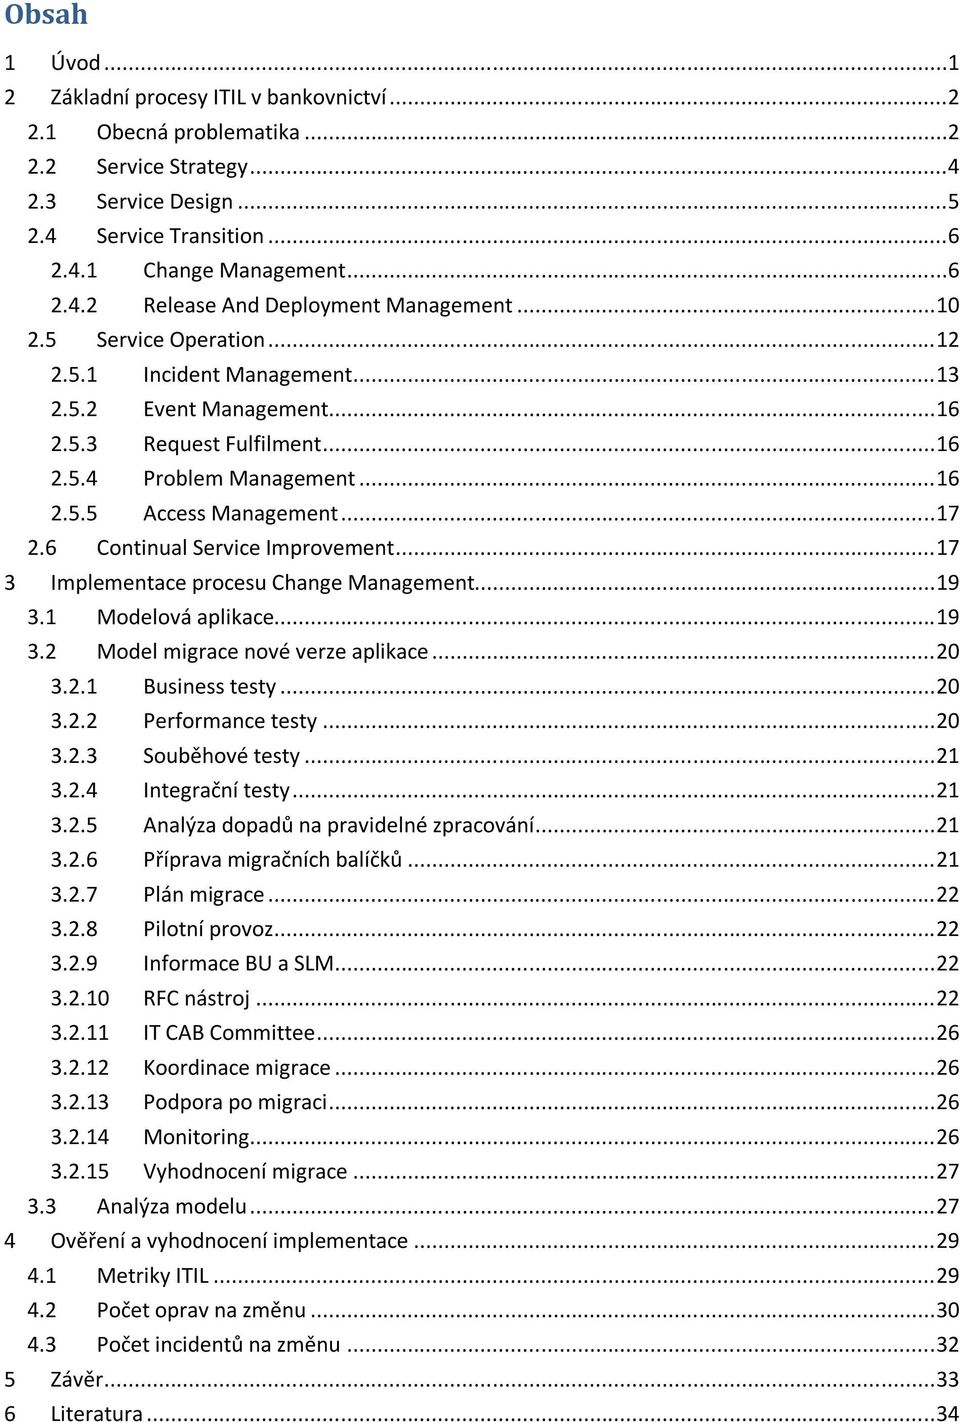 6 Continual Service Improvement... 17 3 Implementace procesu Change Management... 19 3.1 Modelová aplikace... 19 3.2 Model migrace nové verze aplikace... 20 3.2.1 Business testy... 20 3.2.2 Performance testy.